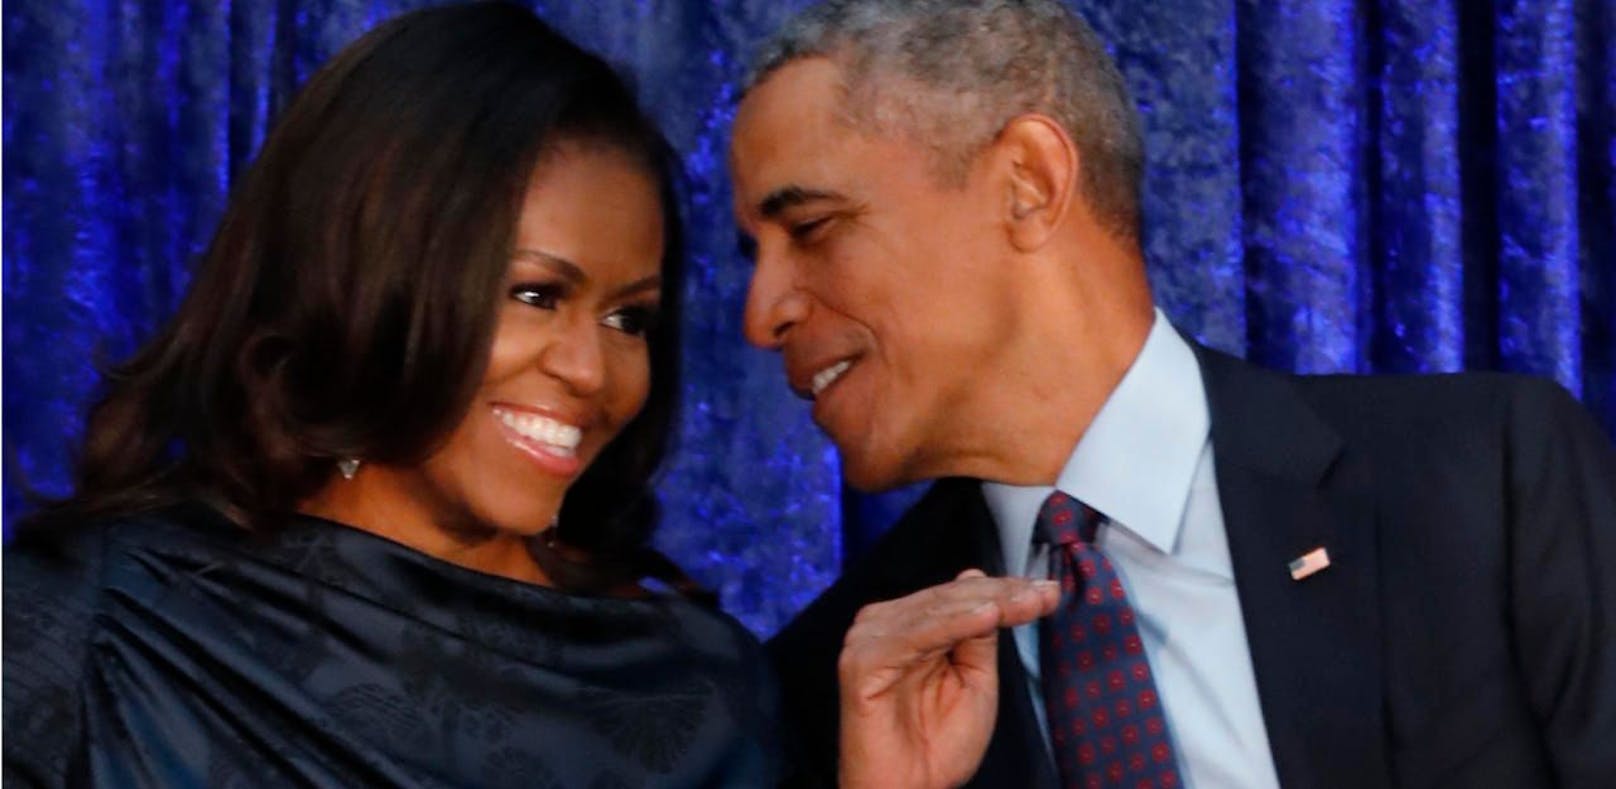 Michelle und Barack Obama feiern heute ihren 29. Hochzeitstag.